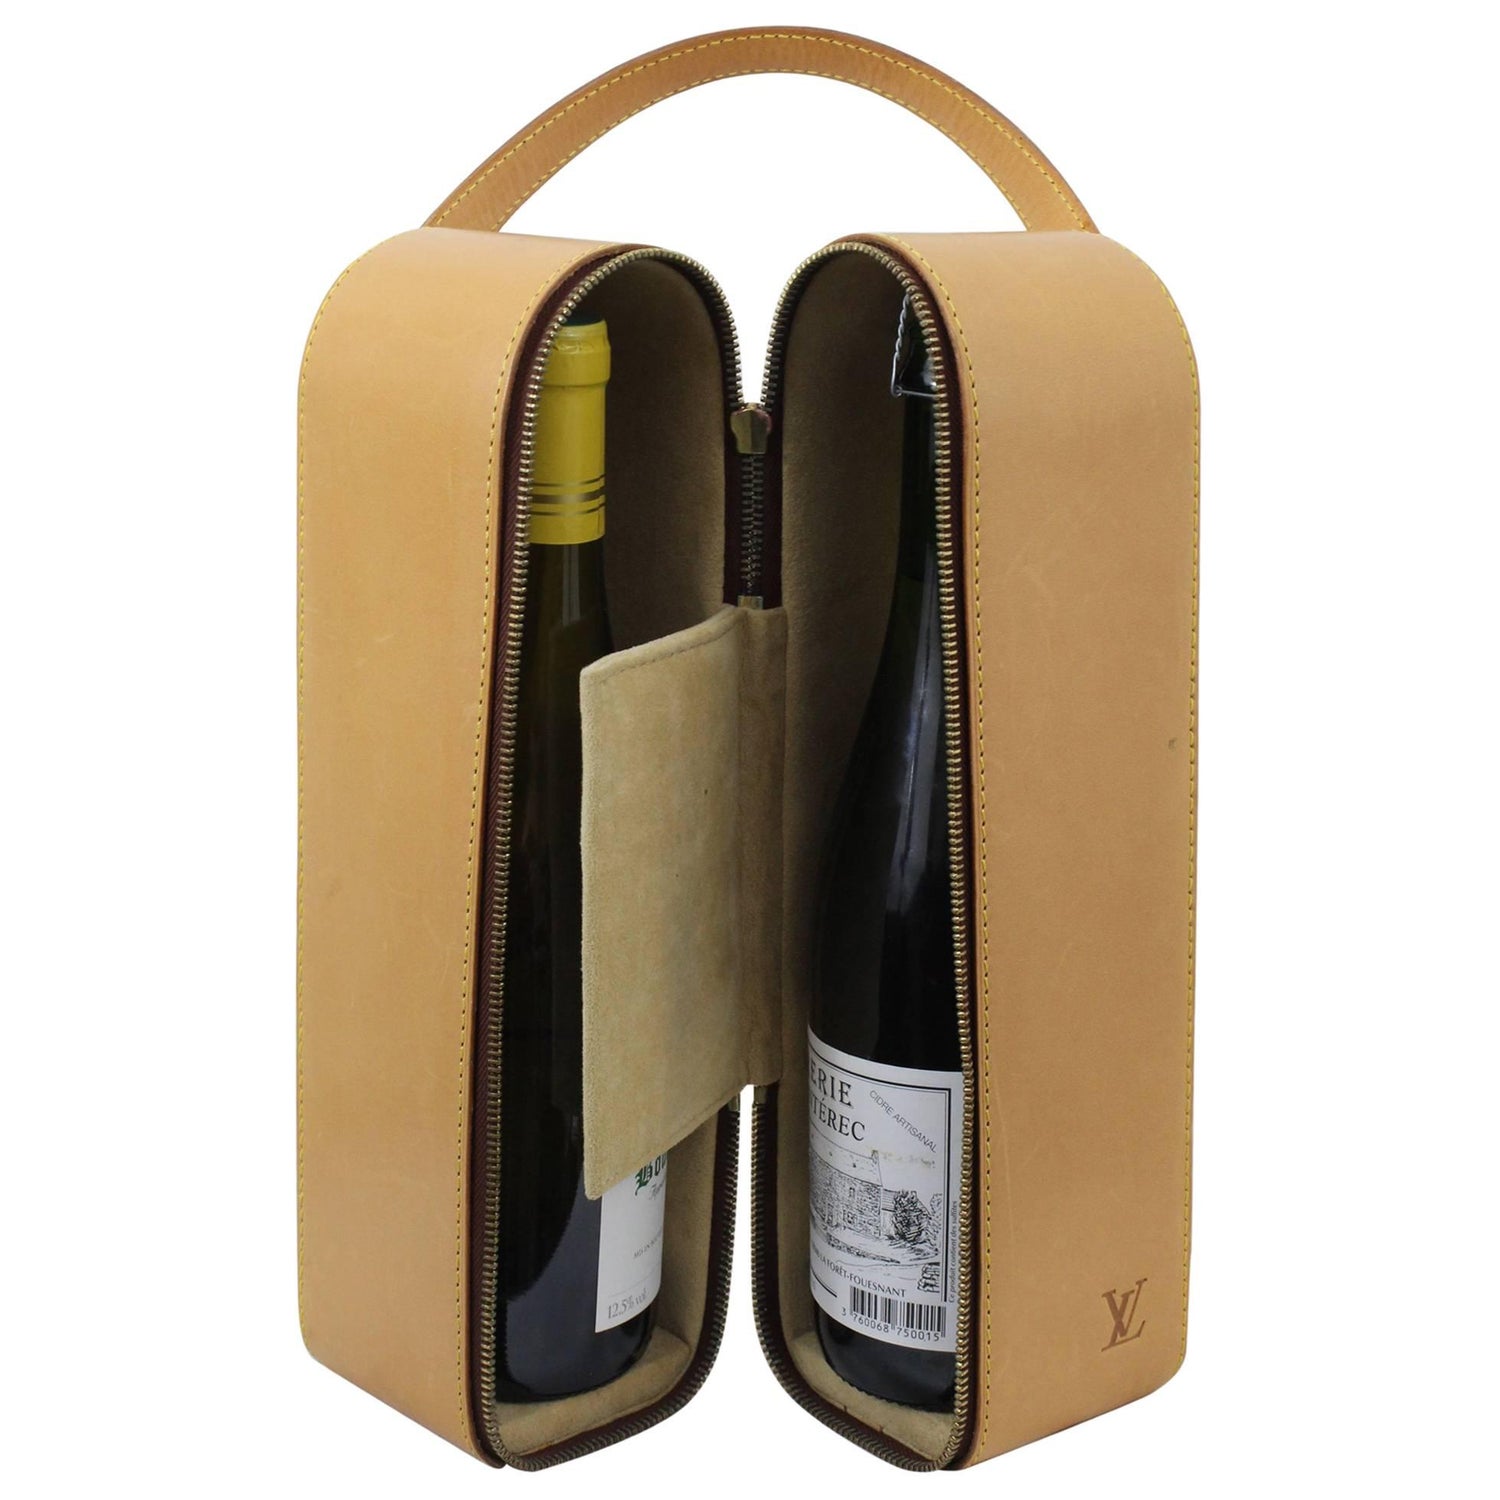 LOUIS VUITTON Natural Leather PORTE-BOUTEILLES Wine Bottle Bag